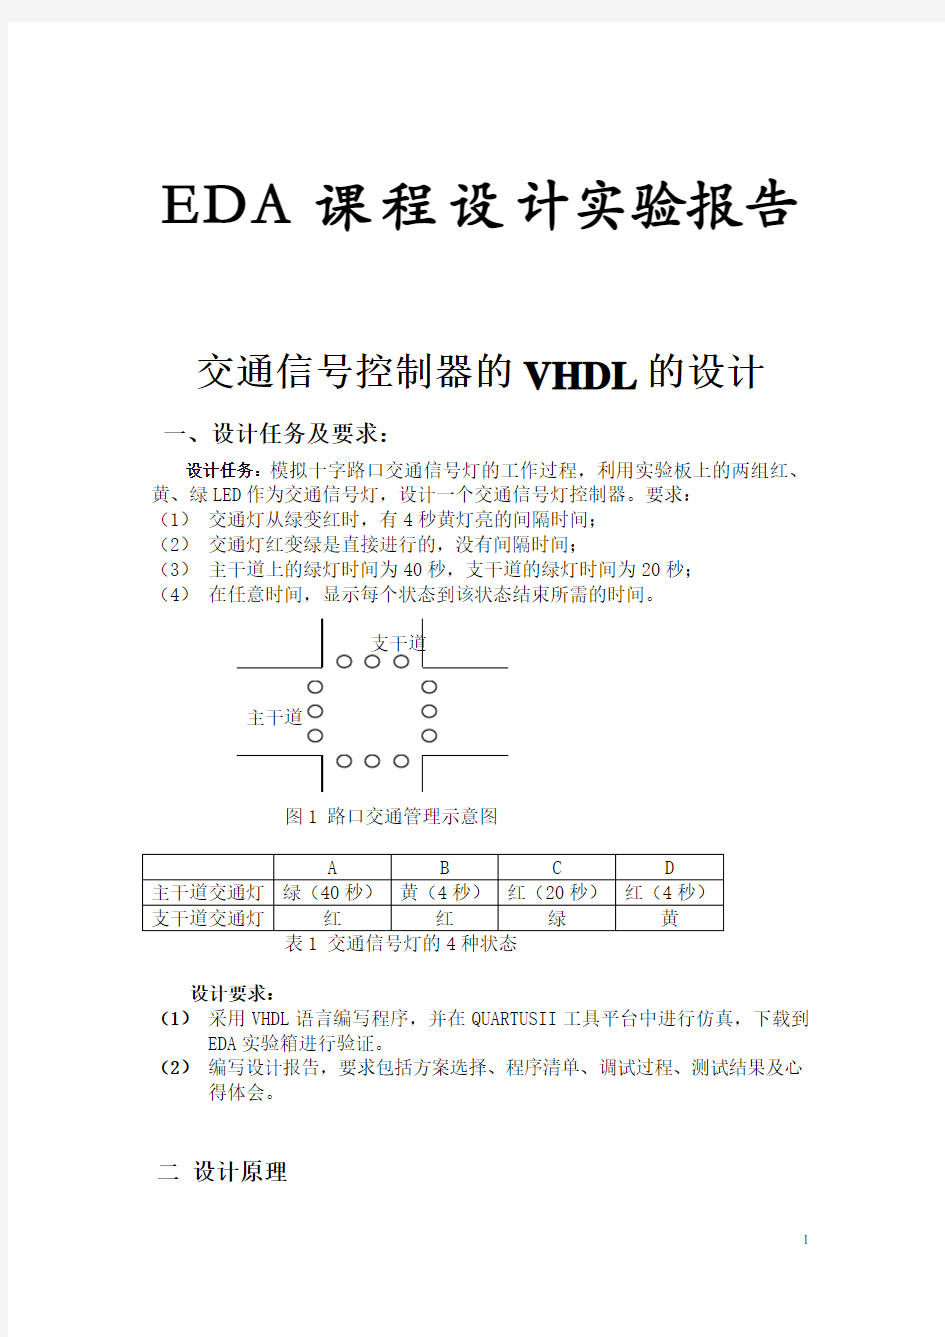 基于VHDL的交通灯设计(EDA课程设计报告)